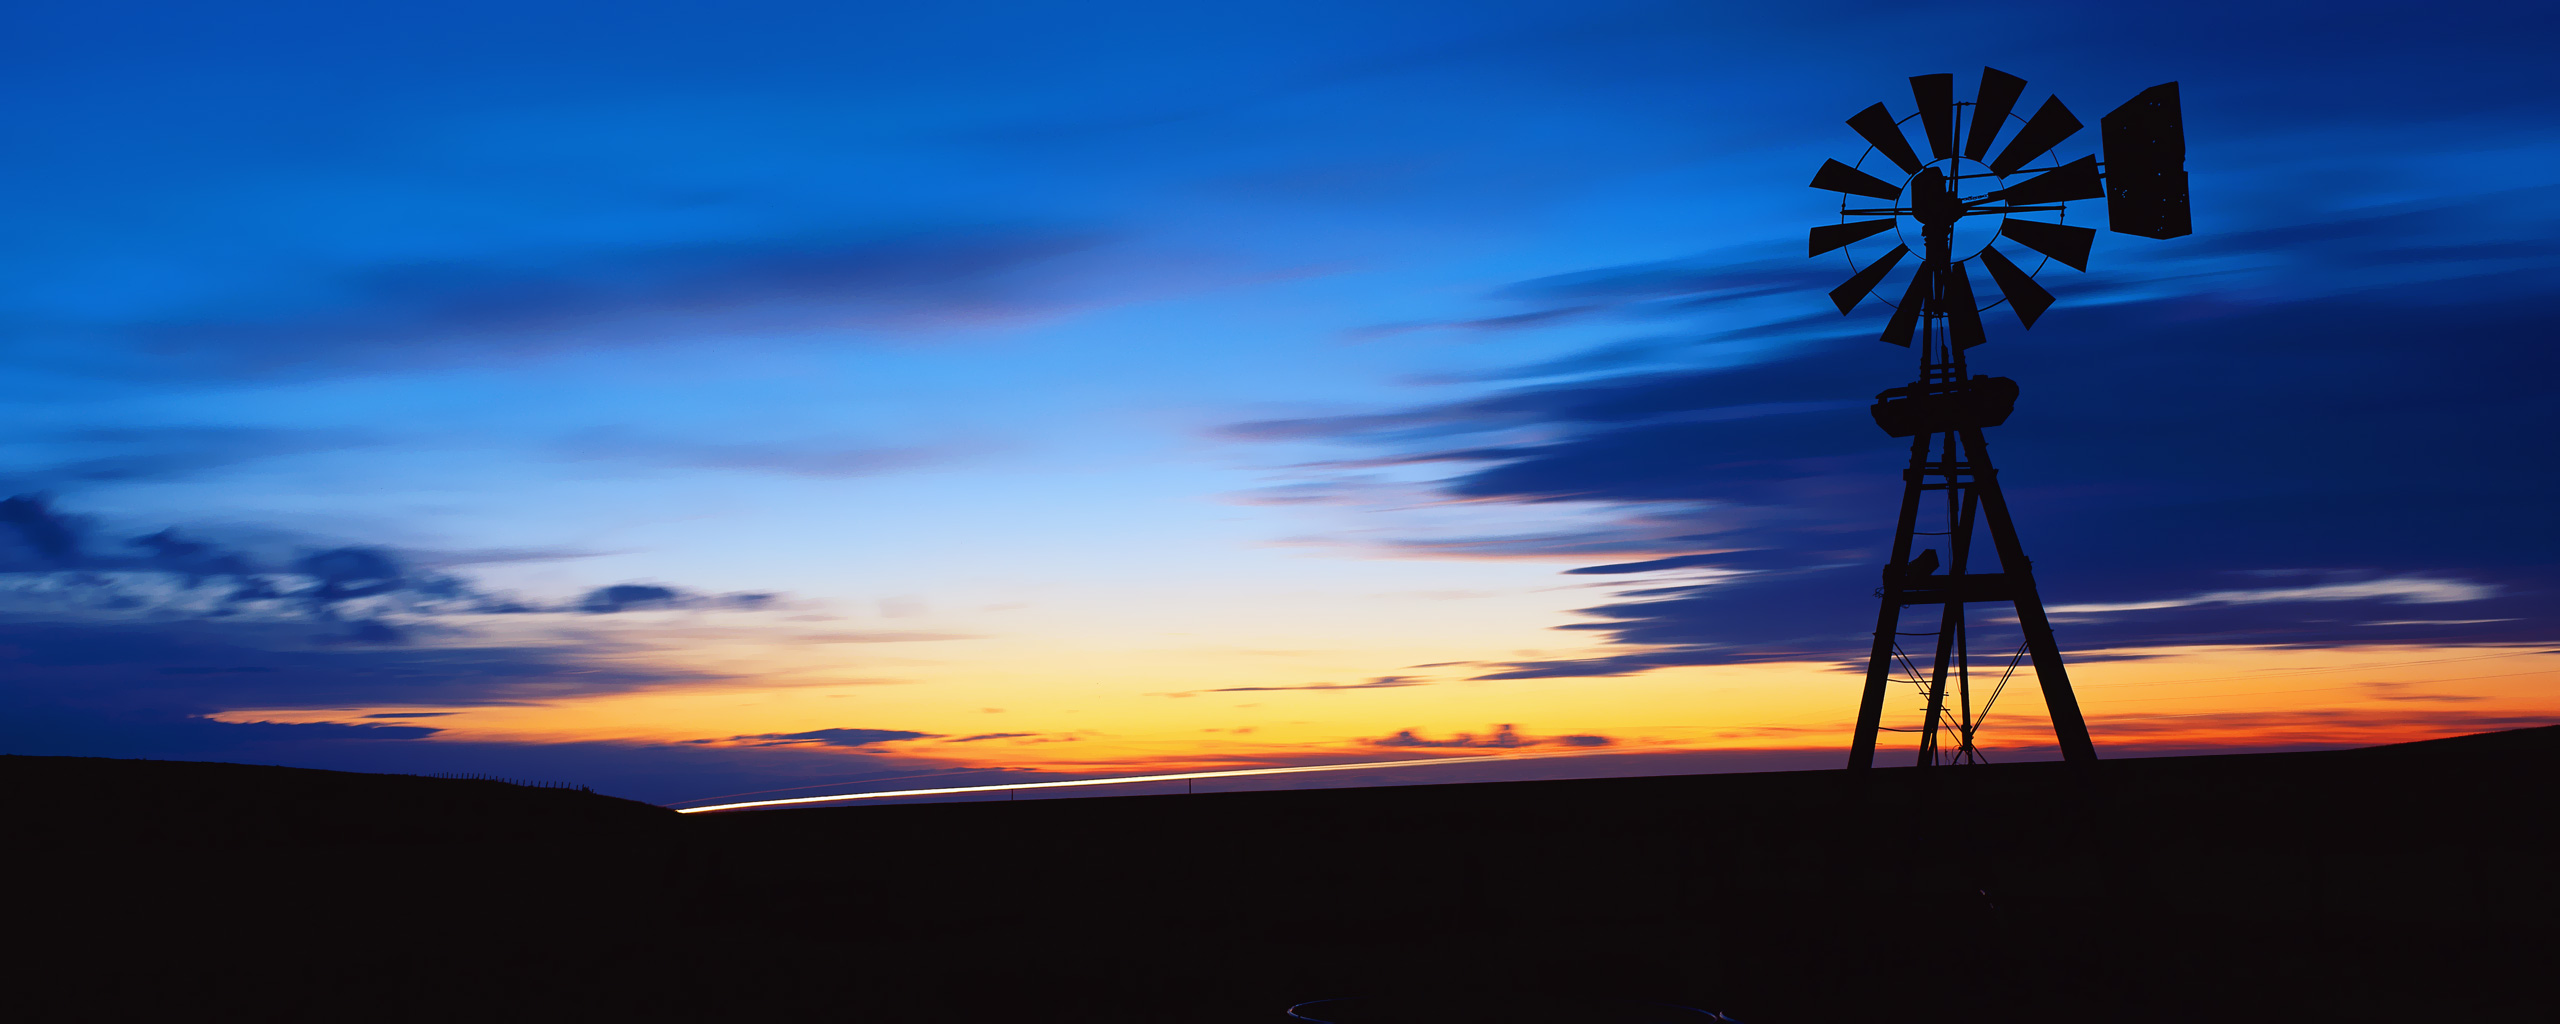 puesta de sol fondo de pantalla,cielo,molino,puesta de sol,horizonte,azul